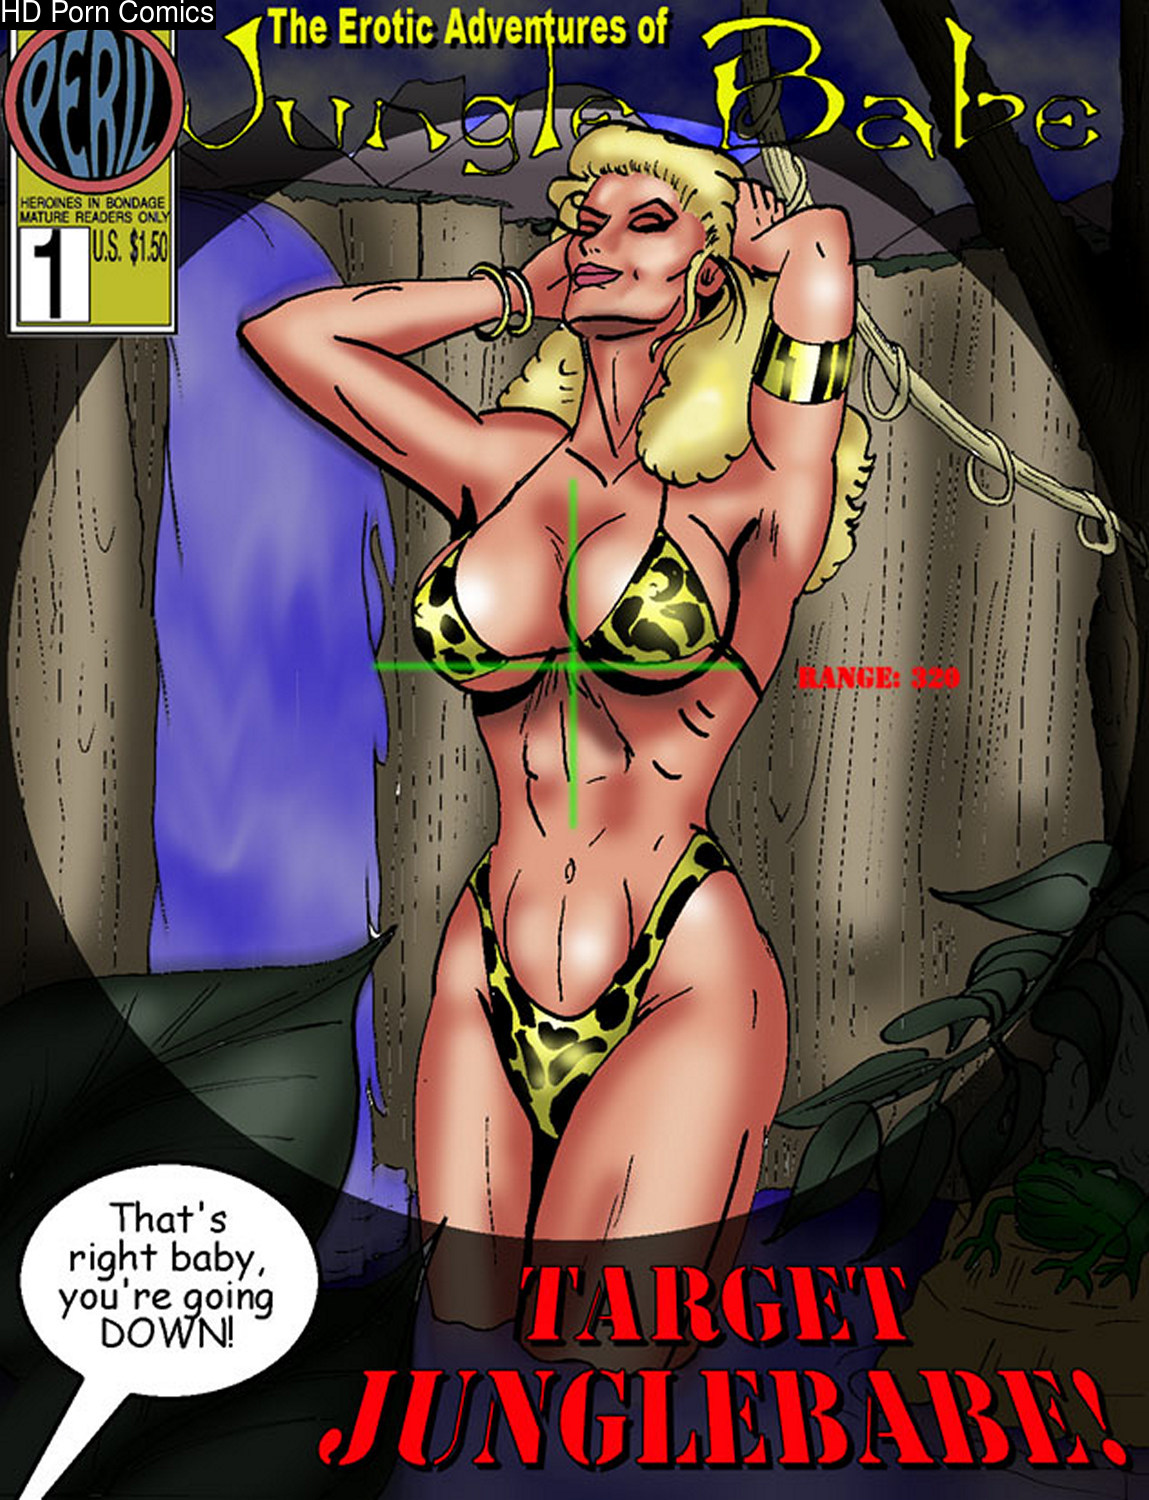 Jungle Interracial Bondage - The Erotic Adventures Of Jungle Babe 1 comic porn | HD Porn Comics